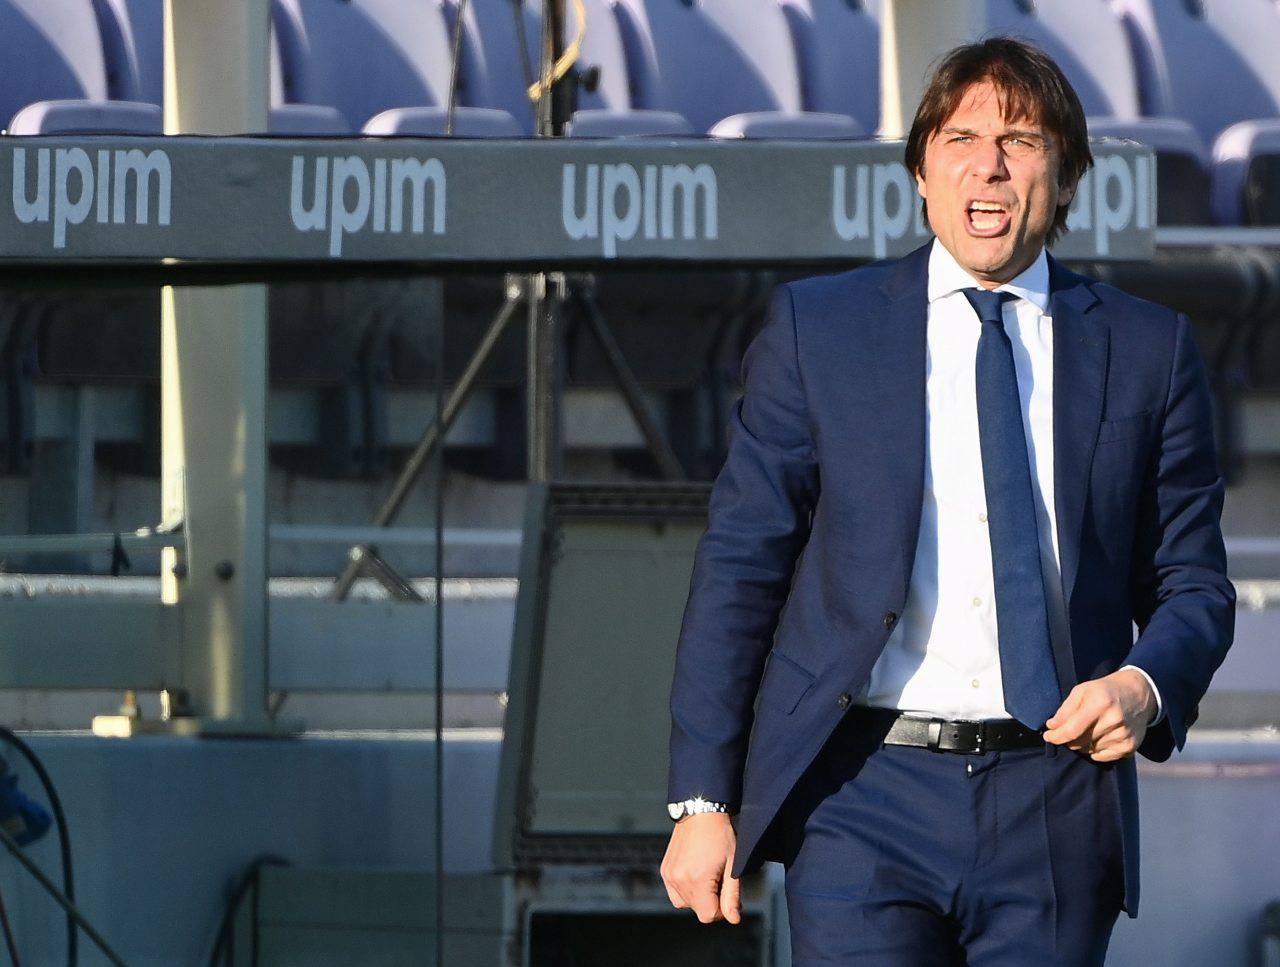 Calciomercato Inter, futuro Conte | "Ecco chi sarà il prossimo allenatore"